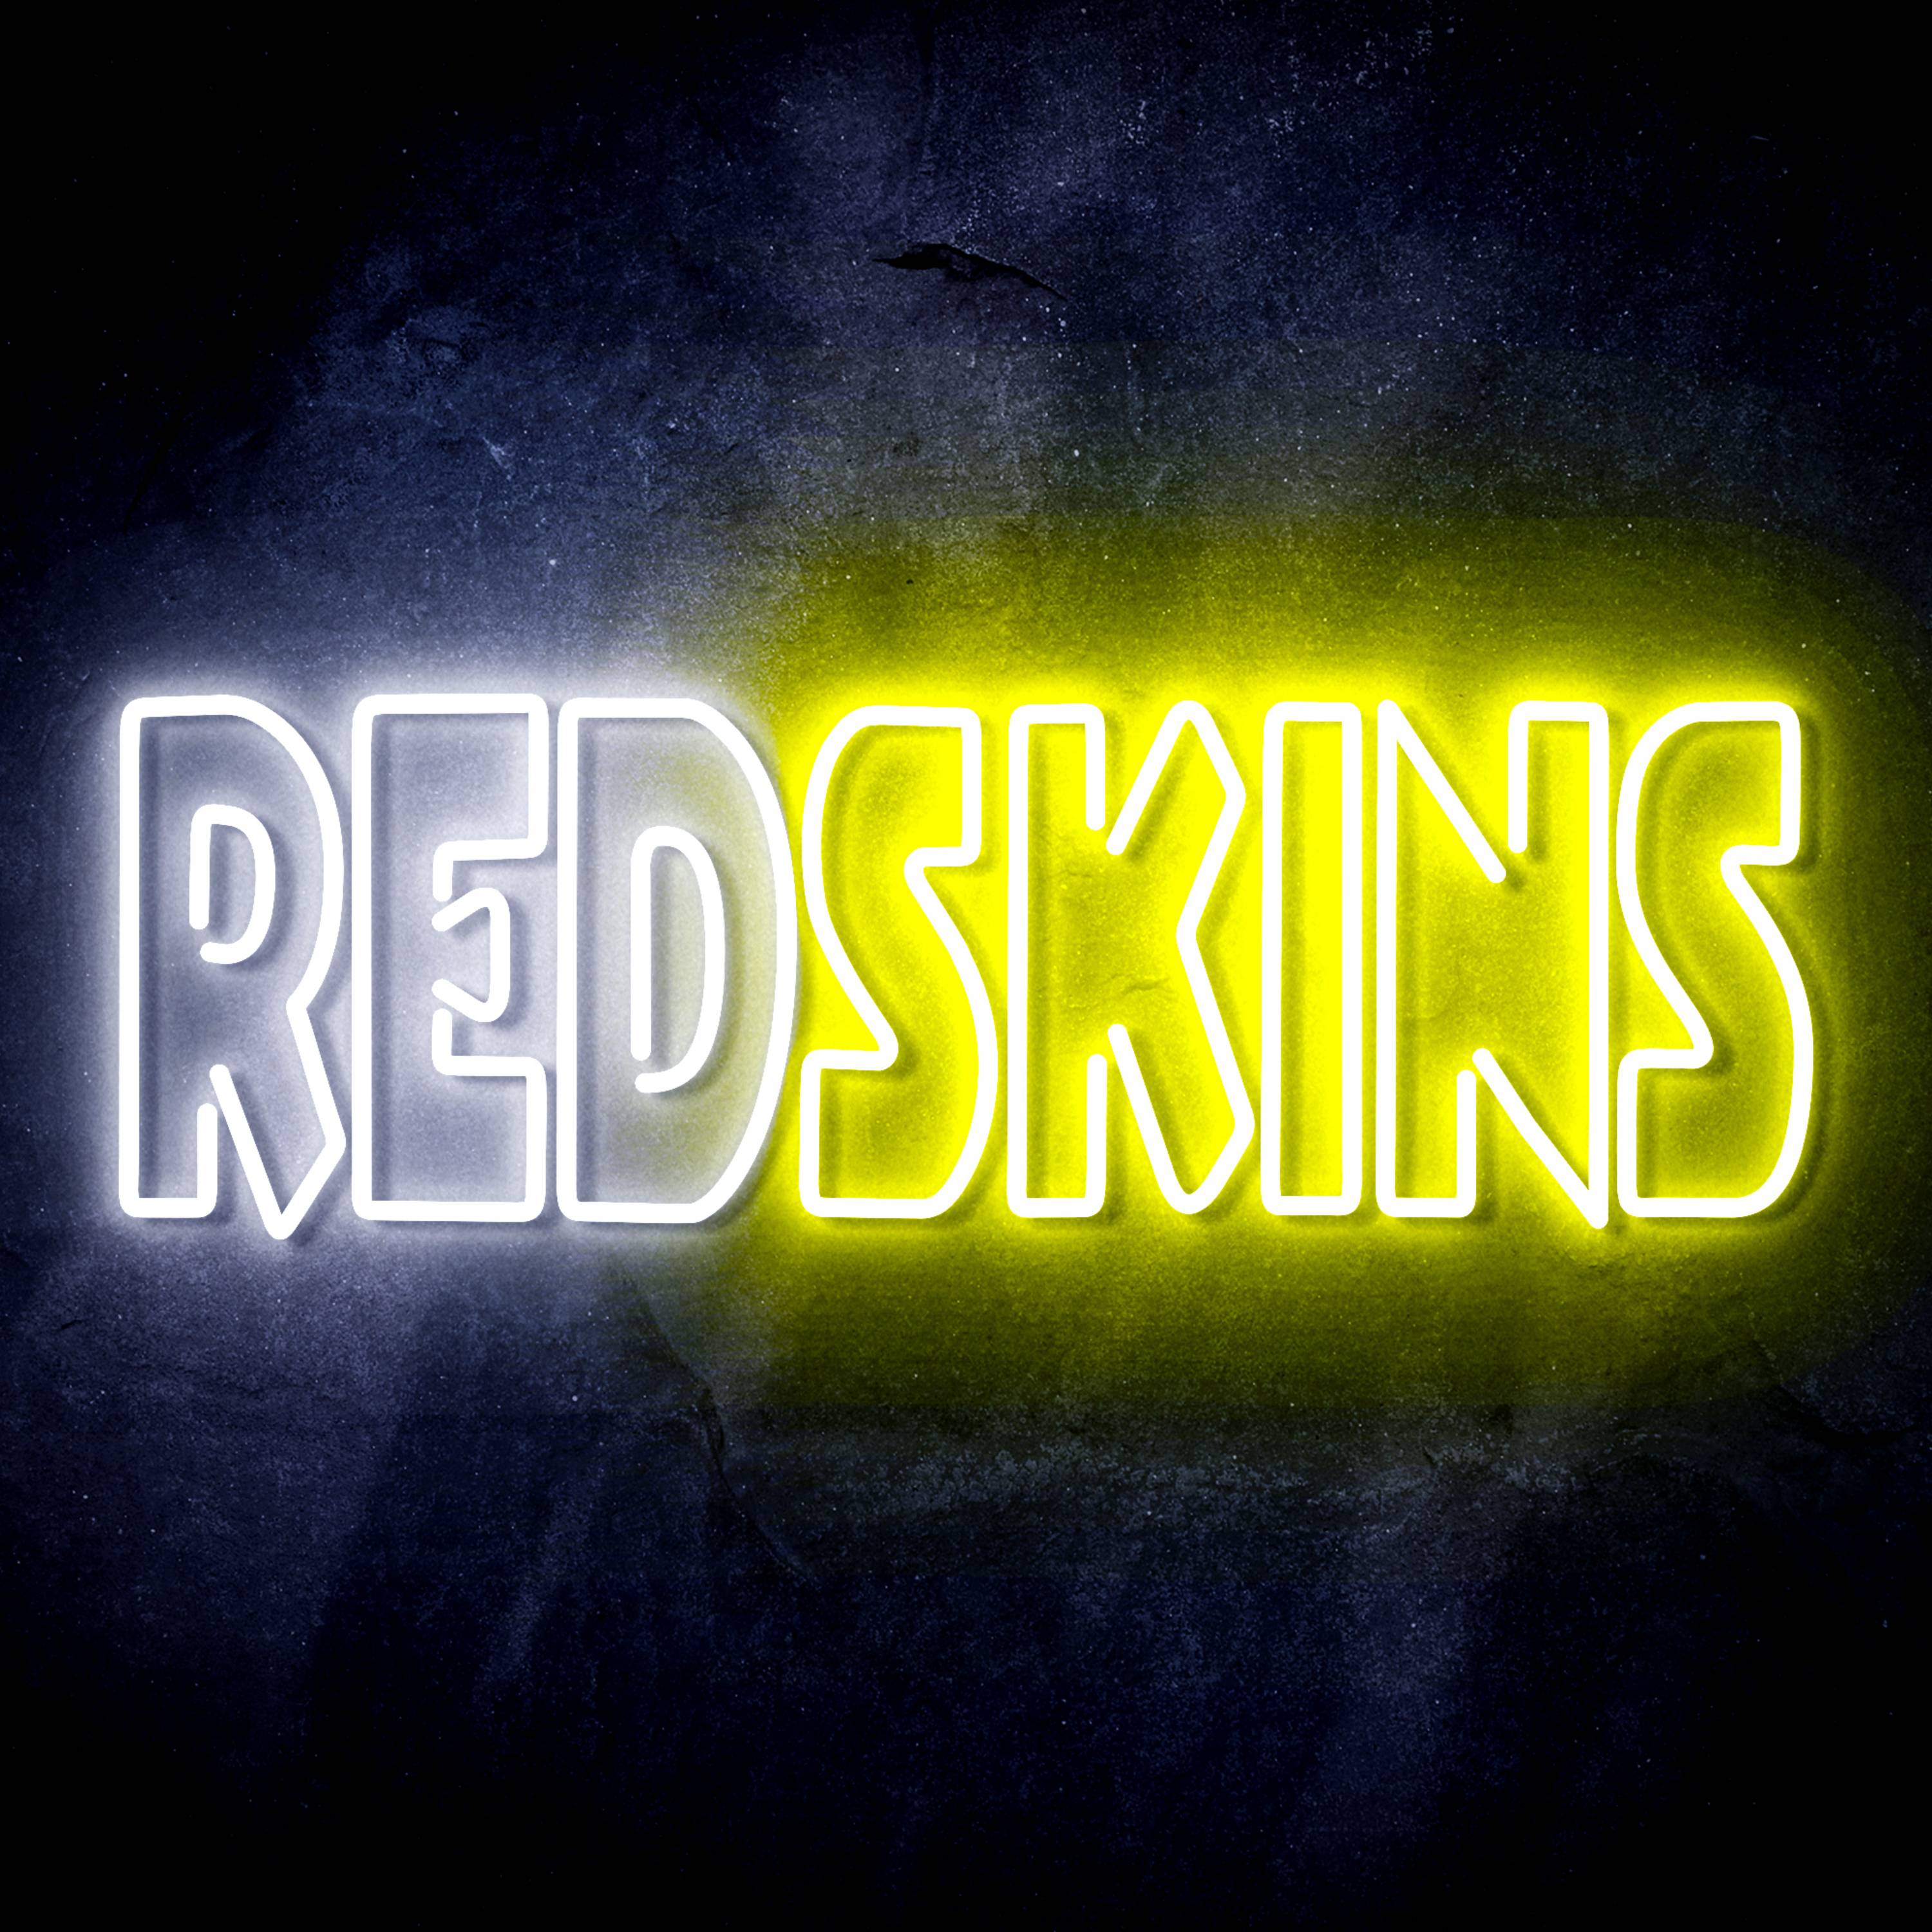 NFL REDSKINS LED Neon Sign